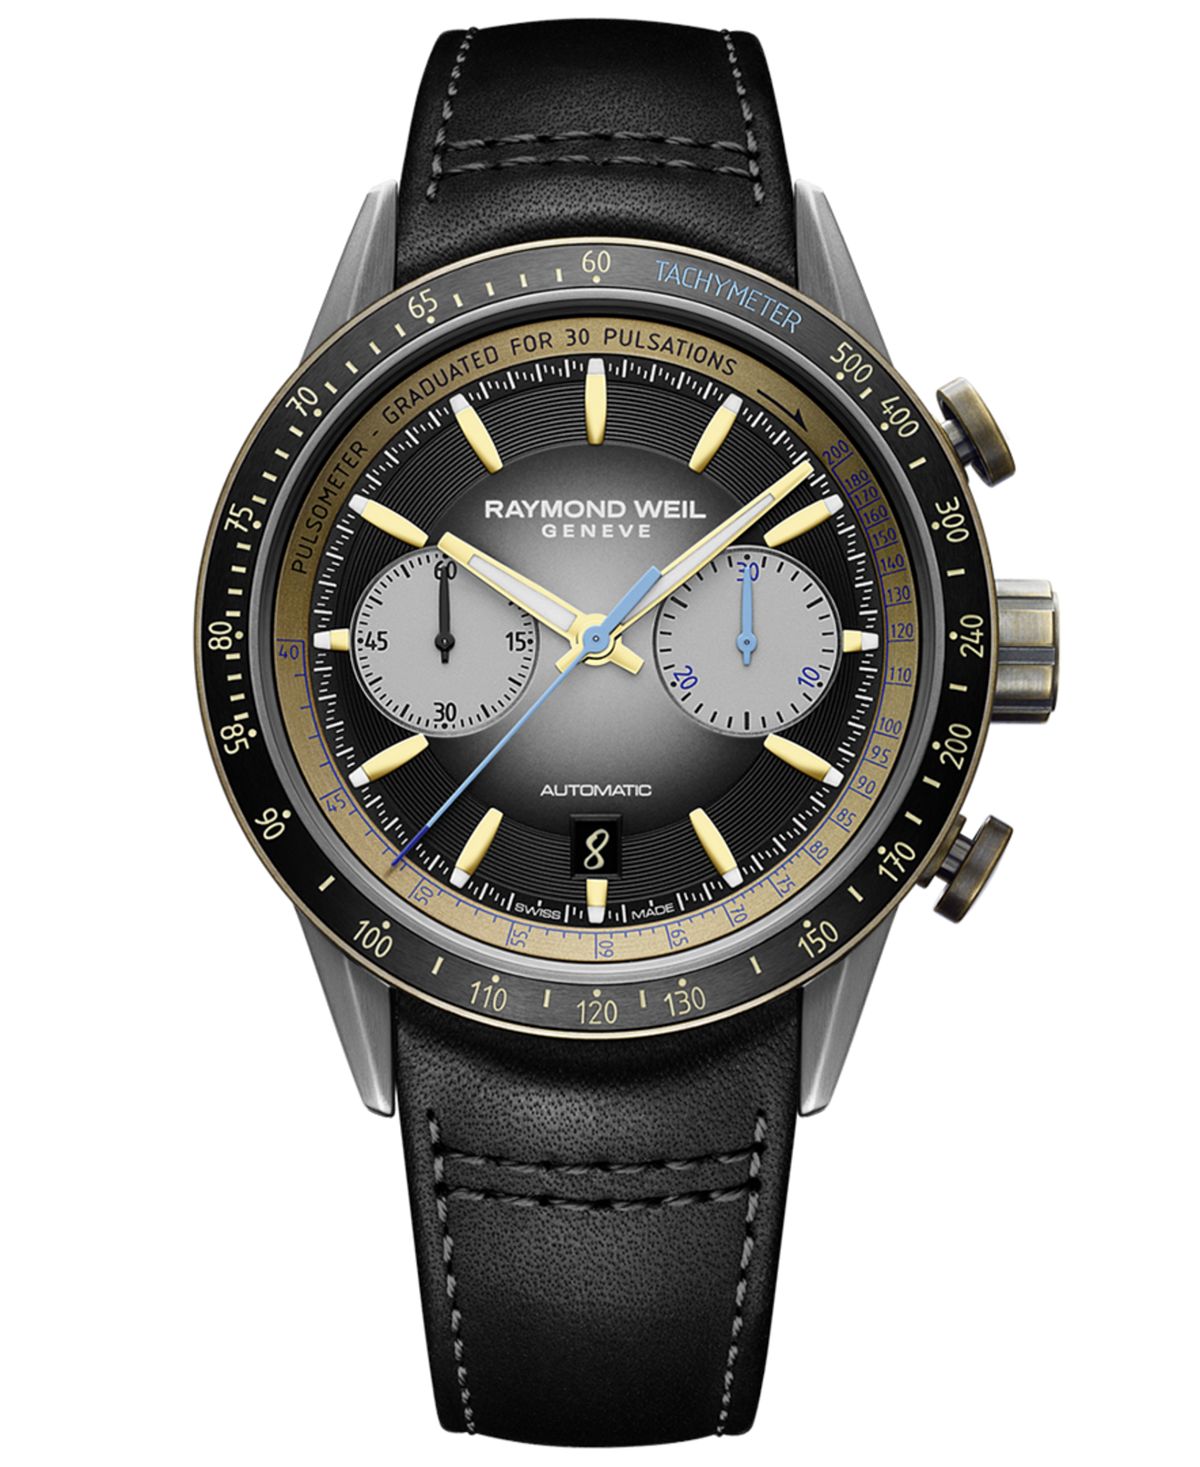 Мужские швейцарские автоматические часы с хронографом Freelancer с черным кожаным ремешком, 44 мм Raymond Weil